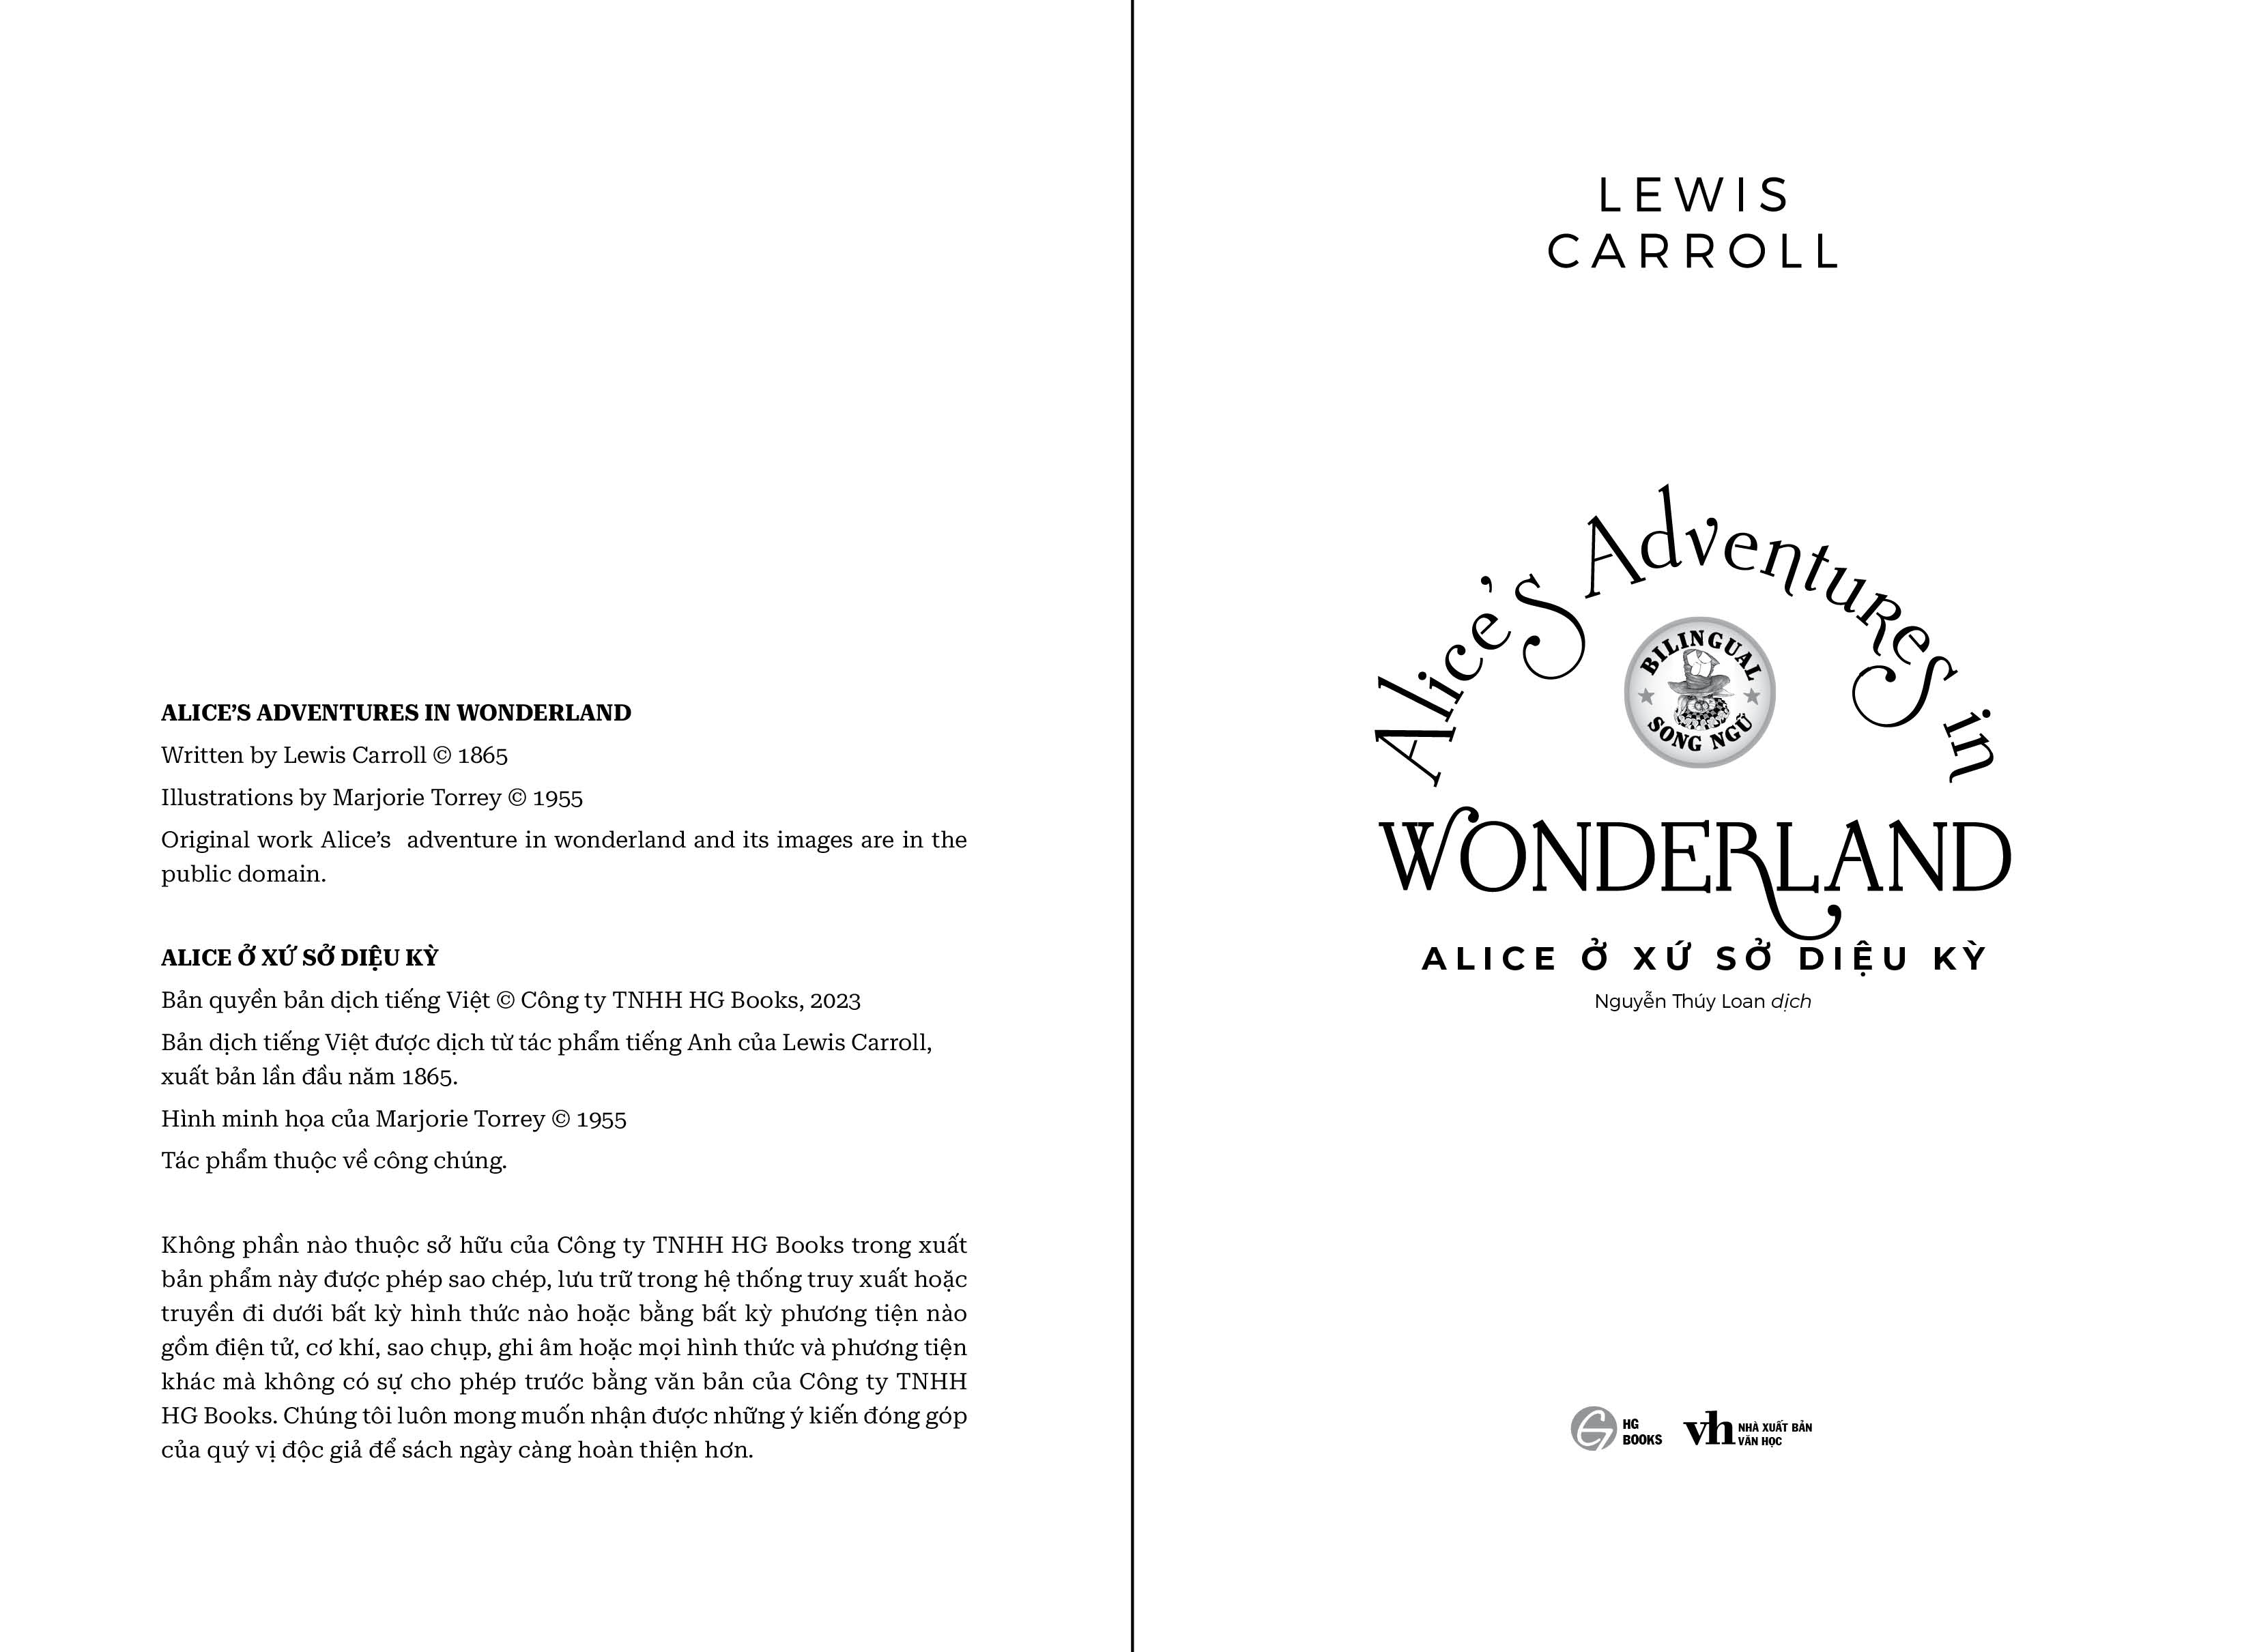 Alice ở xử sở diệu kỳ_Alice's Adventures in Wonderland song ngữ Việt - Anh (kèm audio + note từ vựng)